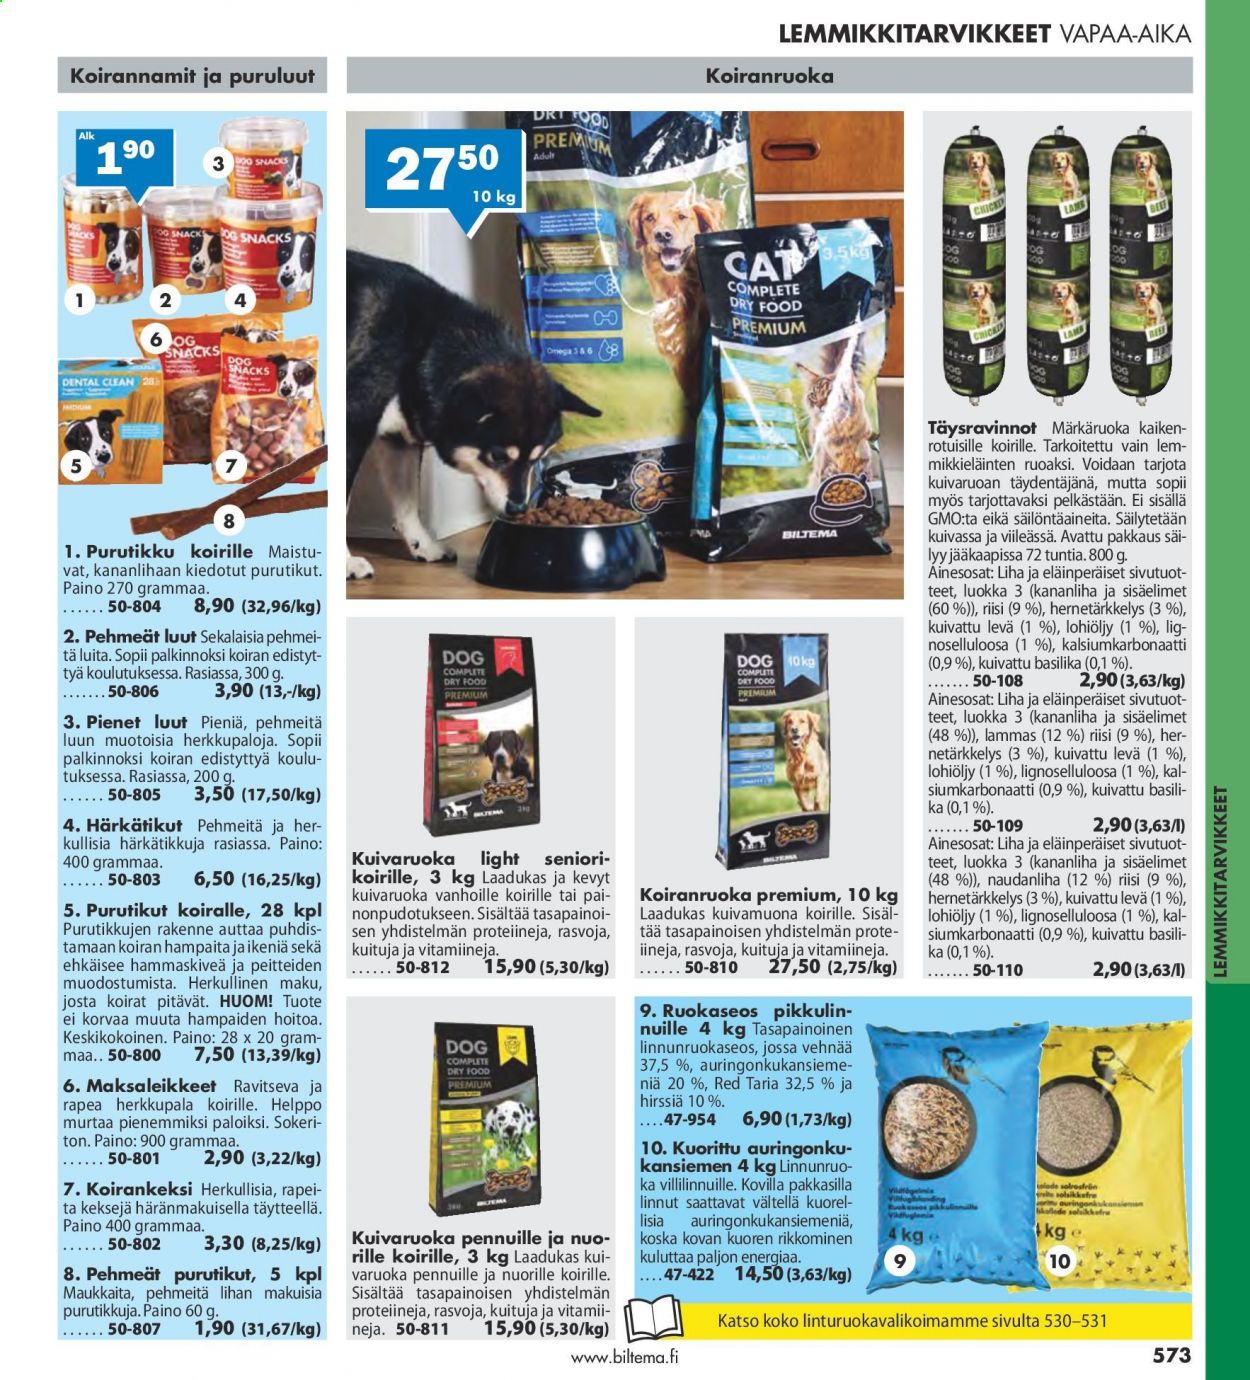 thumbnail - Biltema tarjoukset  - 25.07.2021 - 20.02.2022 - Tarjoustuotteet - koiranruoka. Sivu 573.